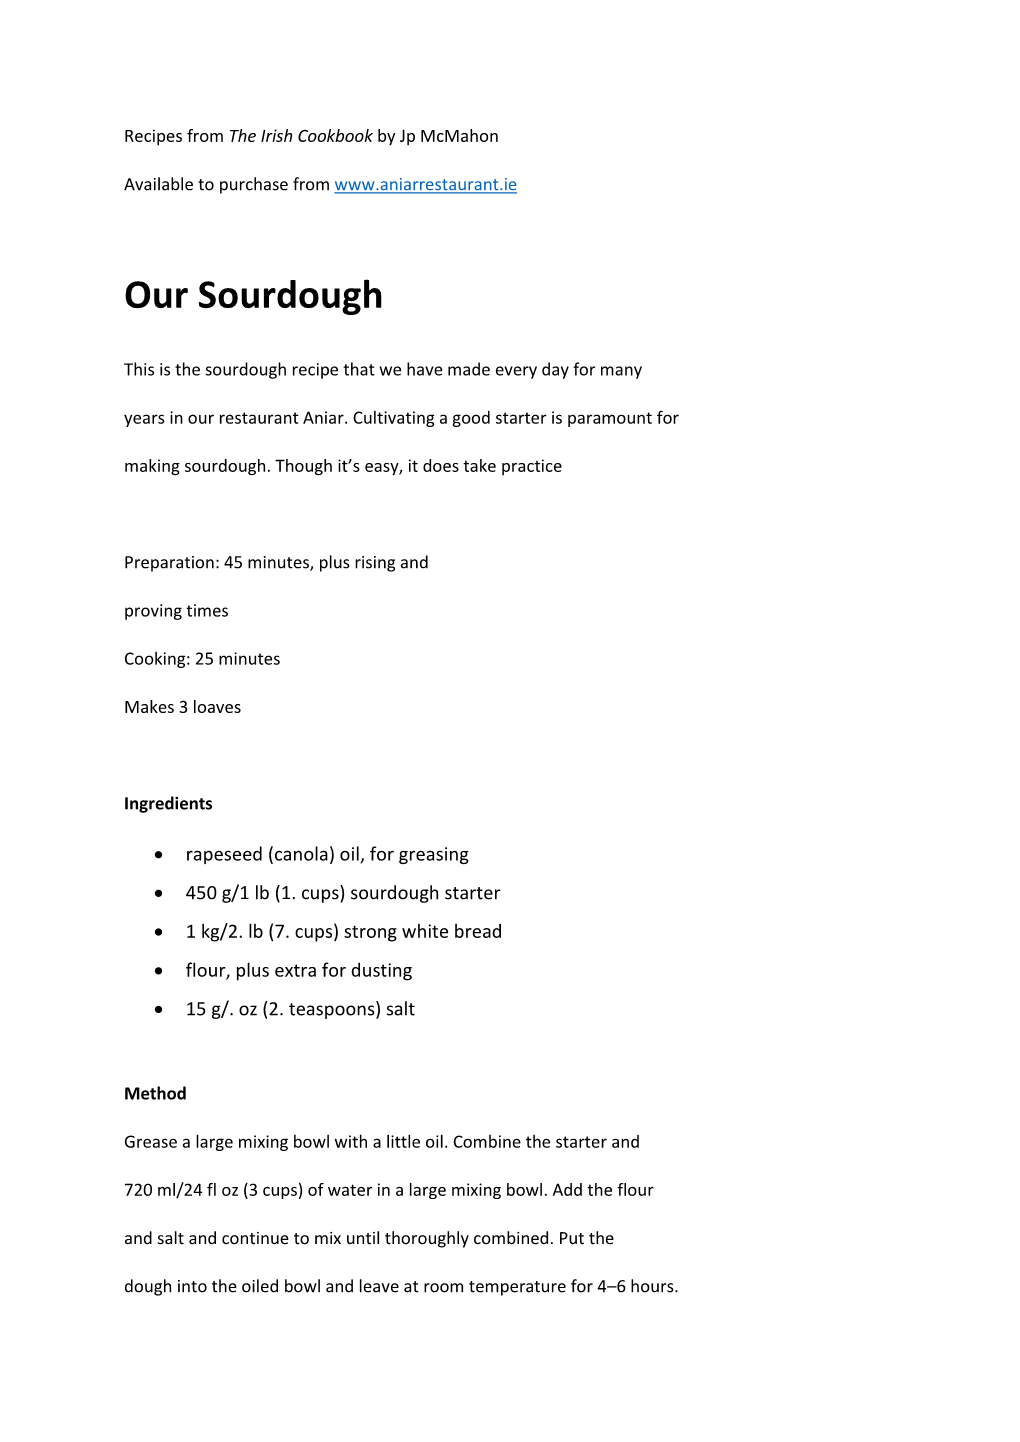 Our Sourdough